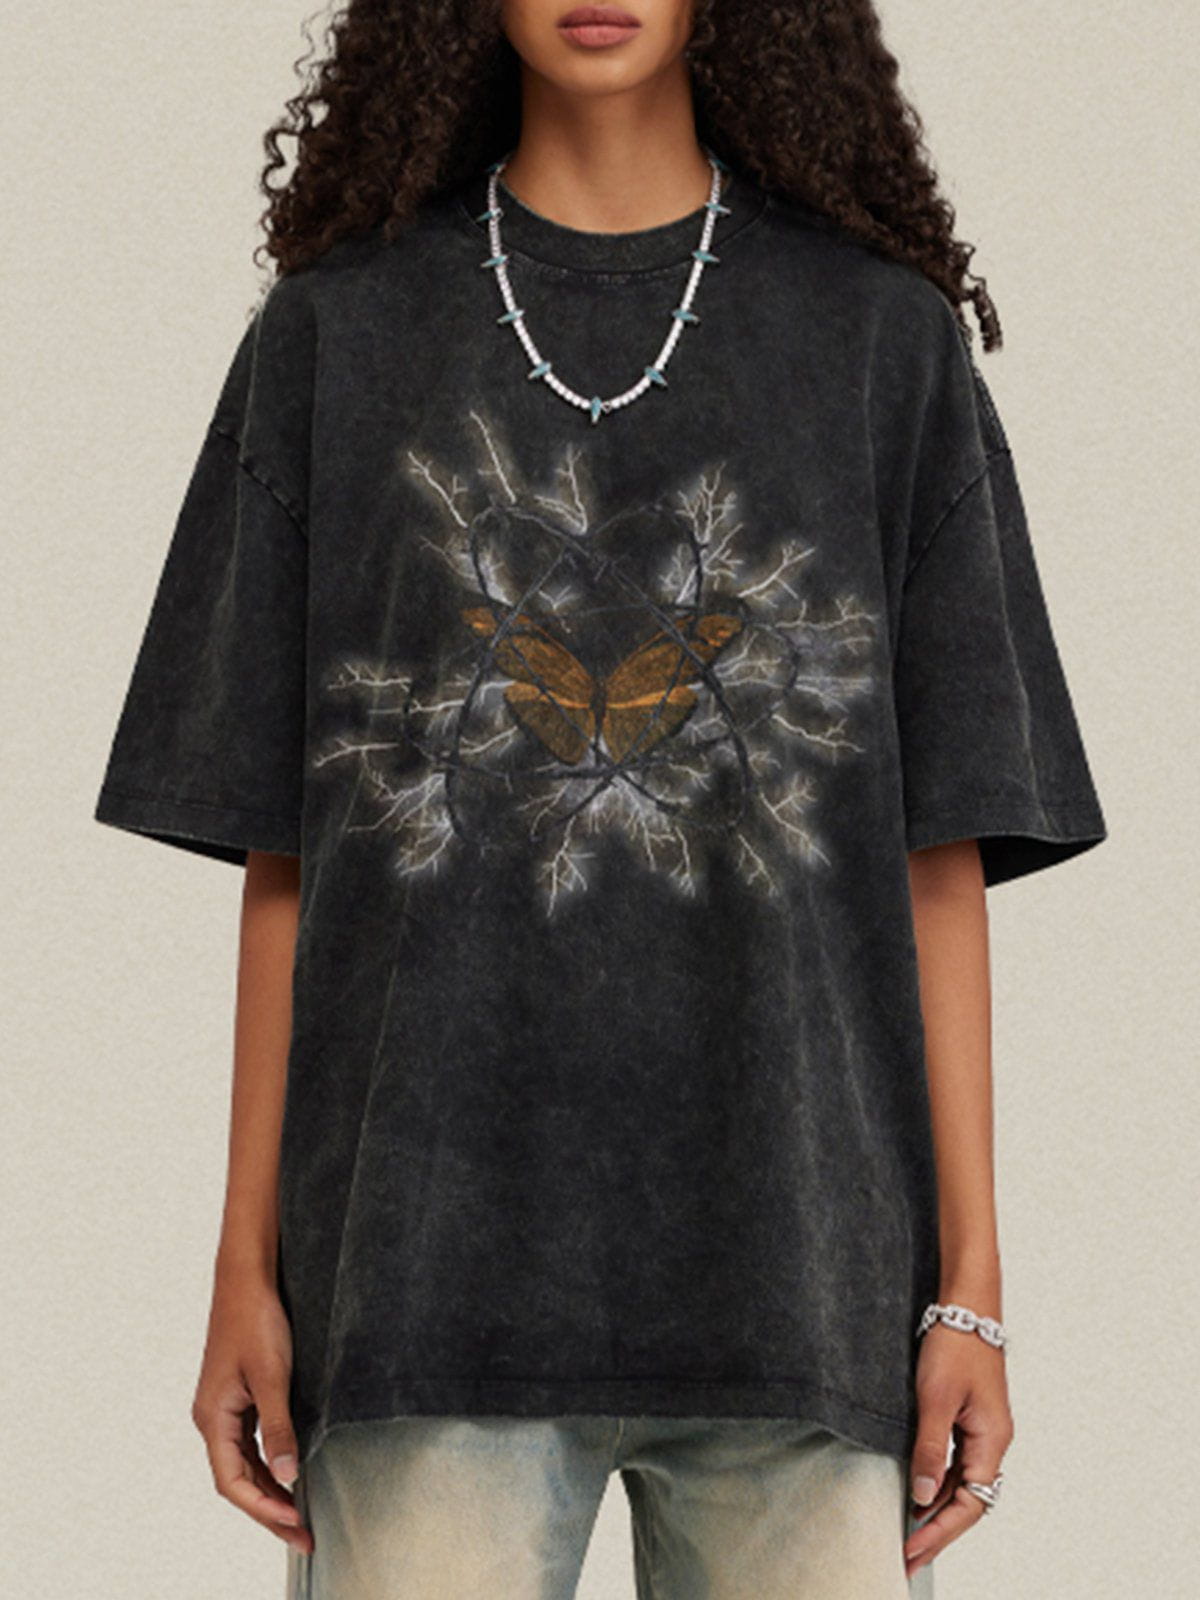 Eprezzy® - Thorns Butterfly Print Tee Streetwear Fashion - eprezzy.com